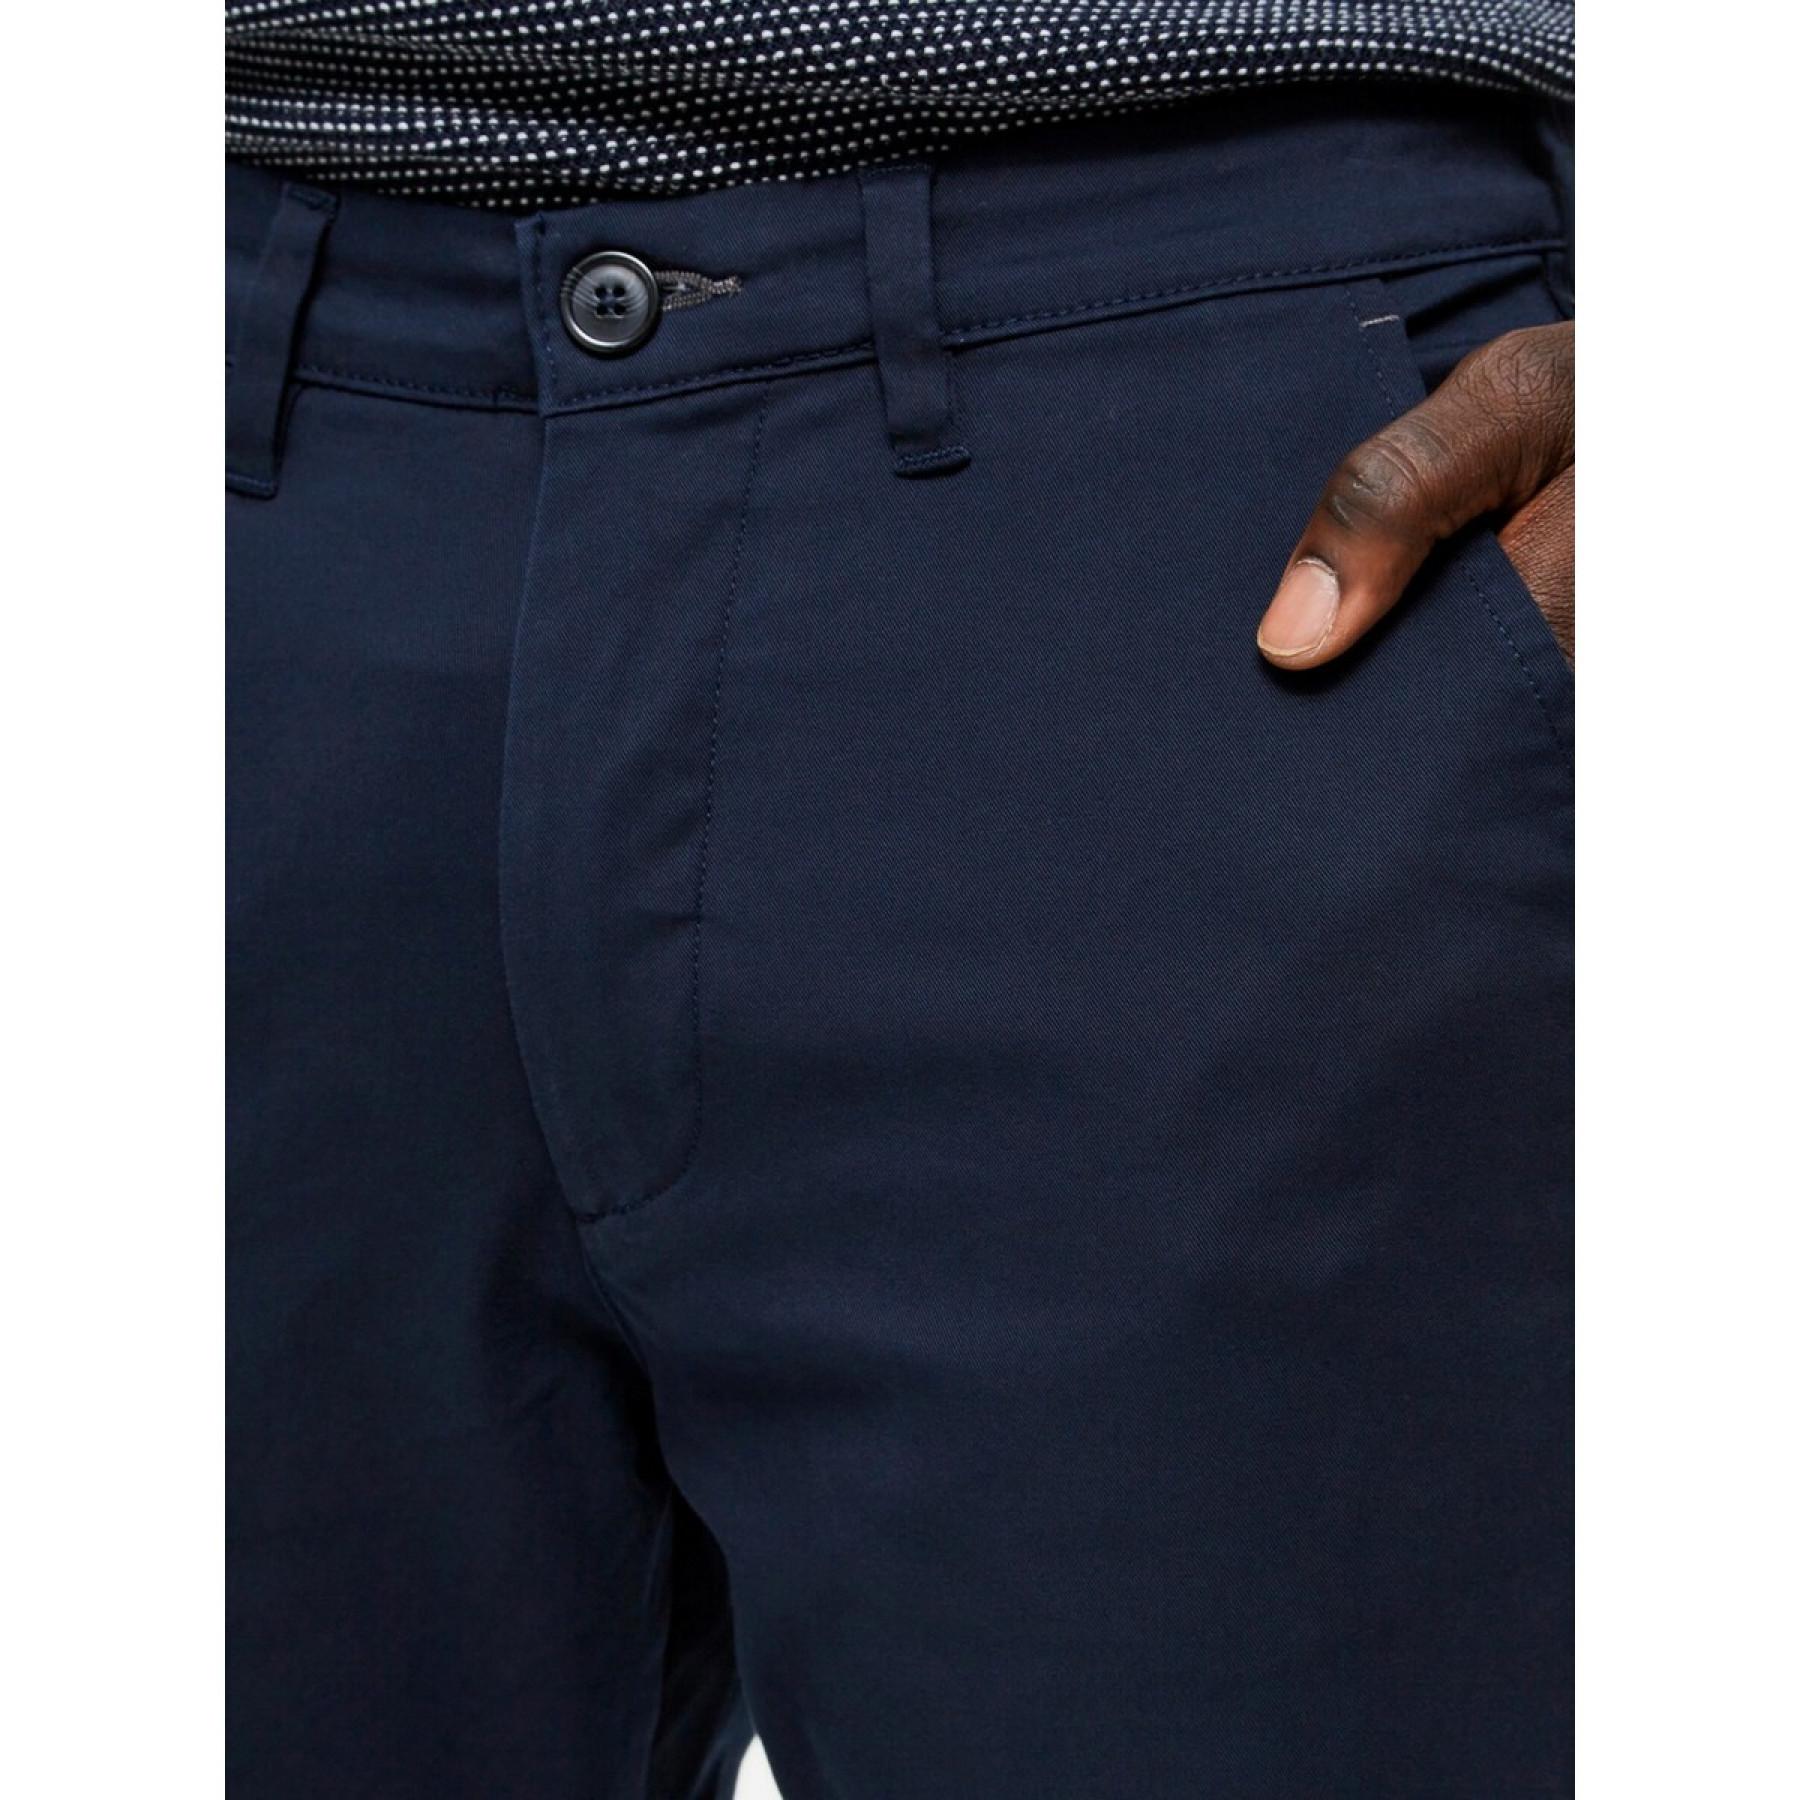 Spodnie Selected chino Miles flex slim